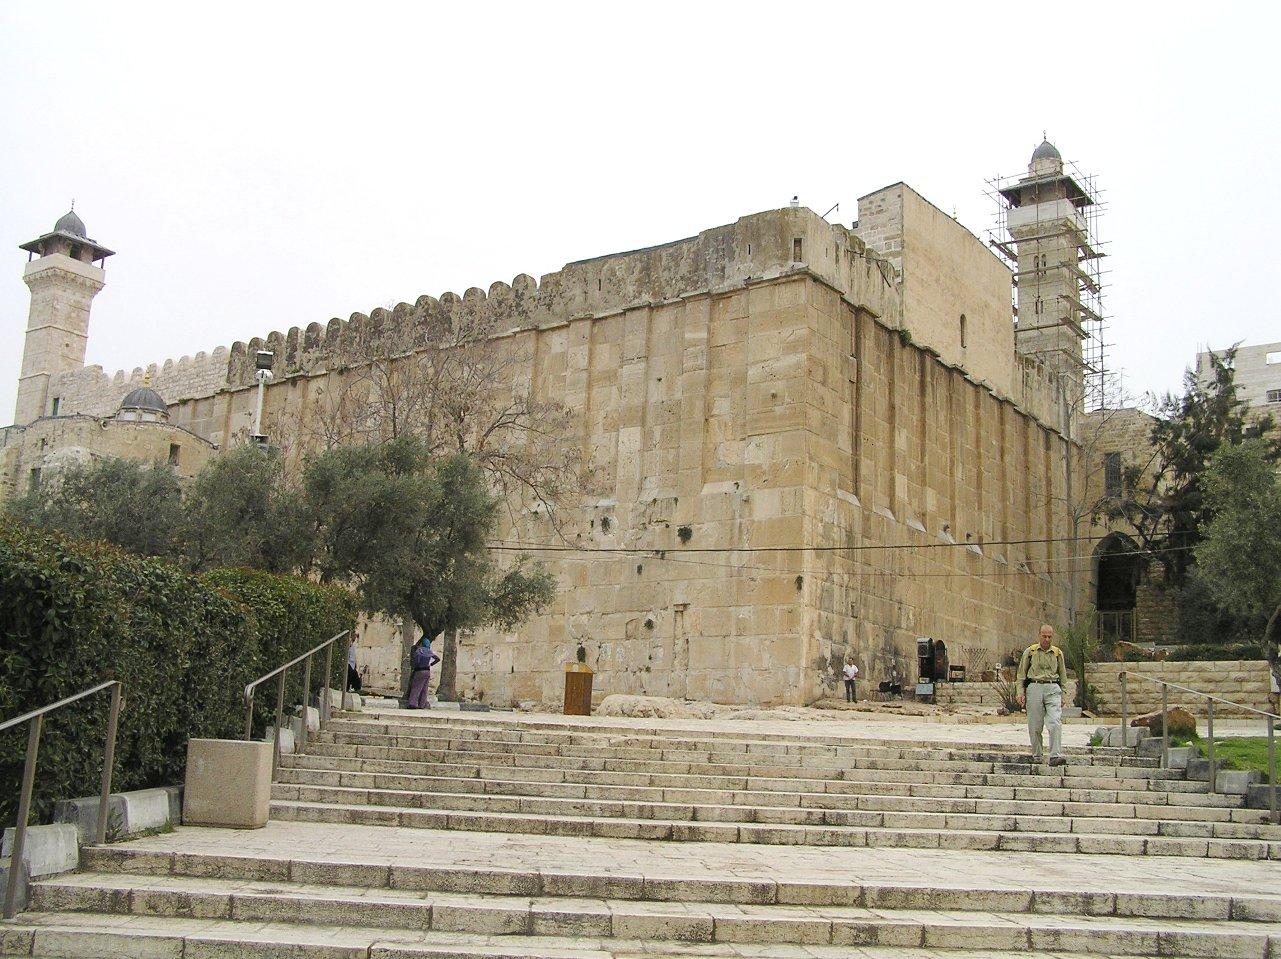 اليونسكو يدرج المدينة القديمة في الخليل والحرم الابراهيمي الشريف على لائحتها للتراث العالمي لحفظها من الاستيطان الاسرائيلي